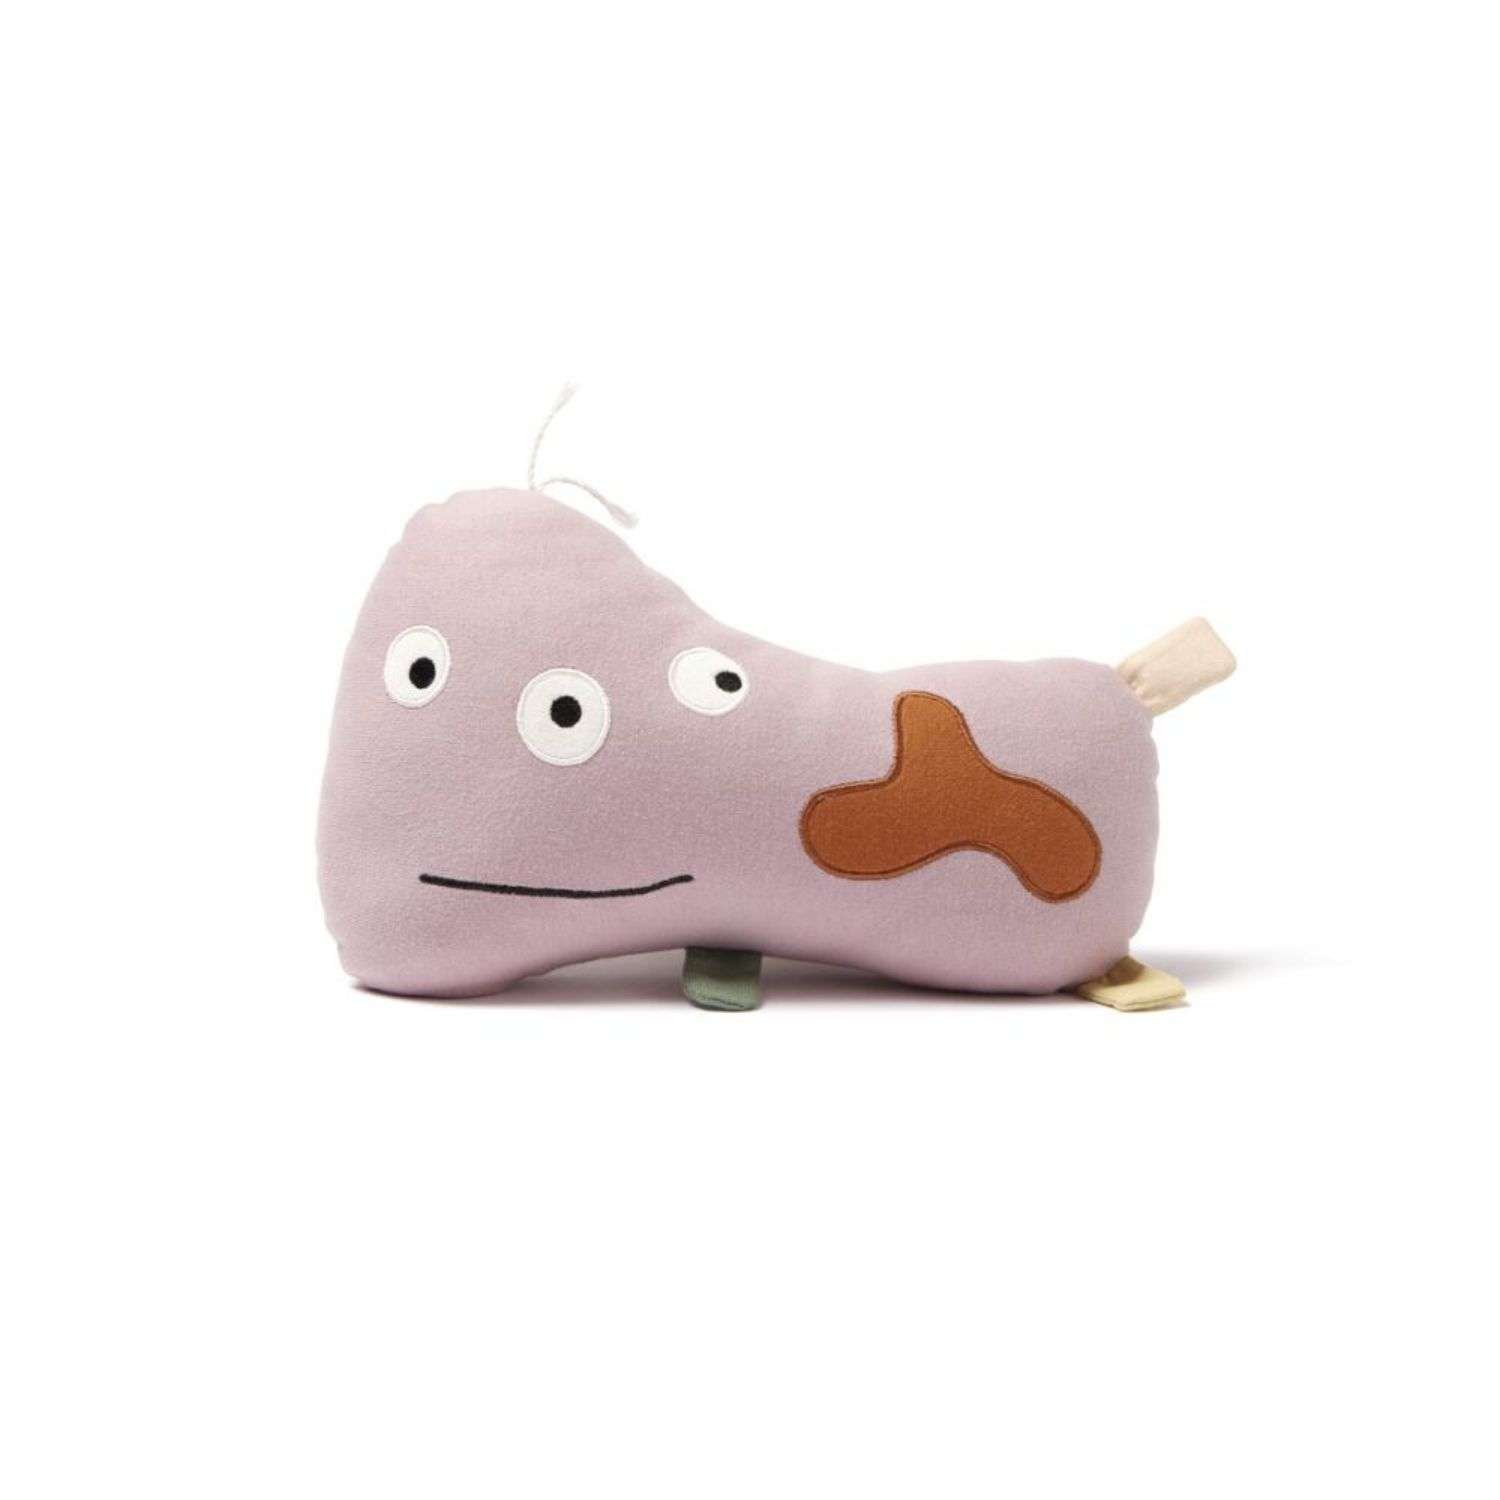 Мягкая игрушка Kids concept Микроб LaCilla розовая - фото 1